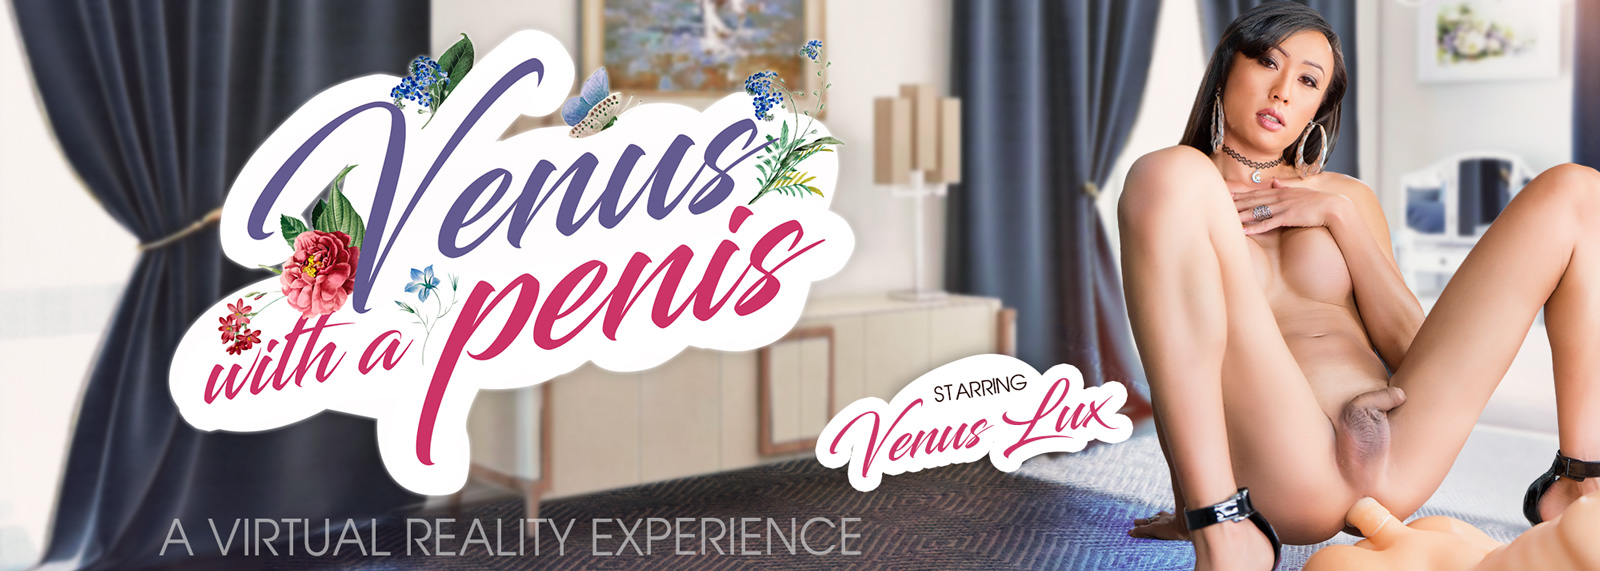 Venus with a Penis - VR Porn Video, Starring Venus Lux VR